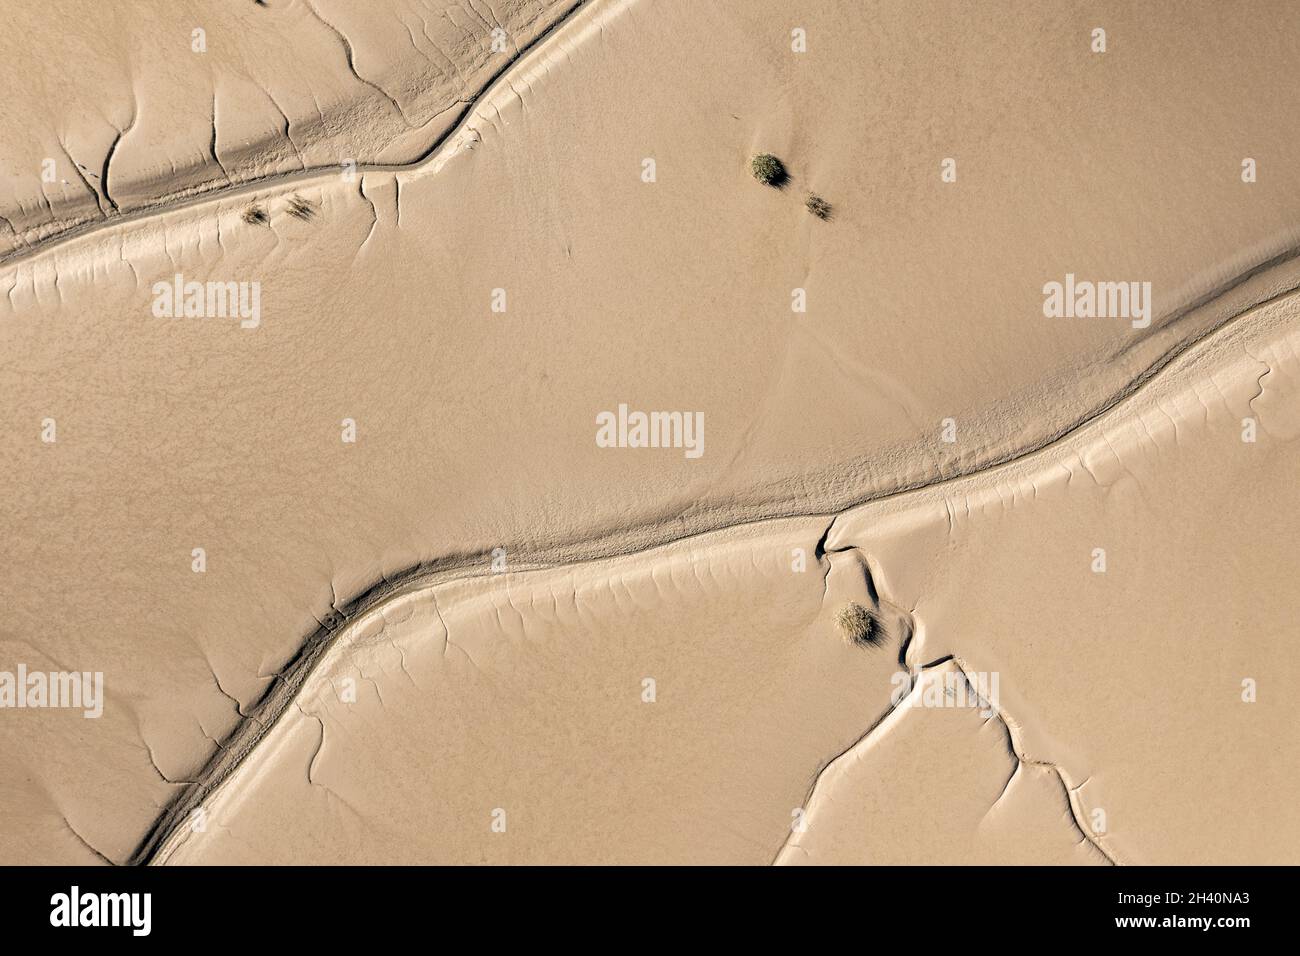 Vue aérienne de la baie de somme, France, somme (80), le Crotoy Banque D'Images